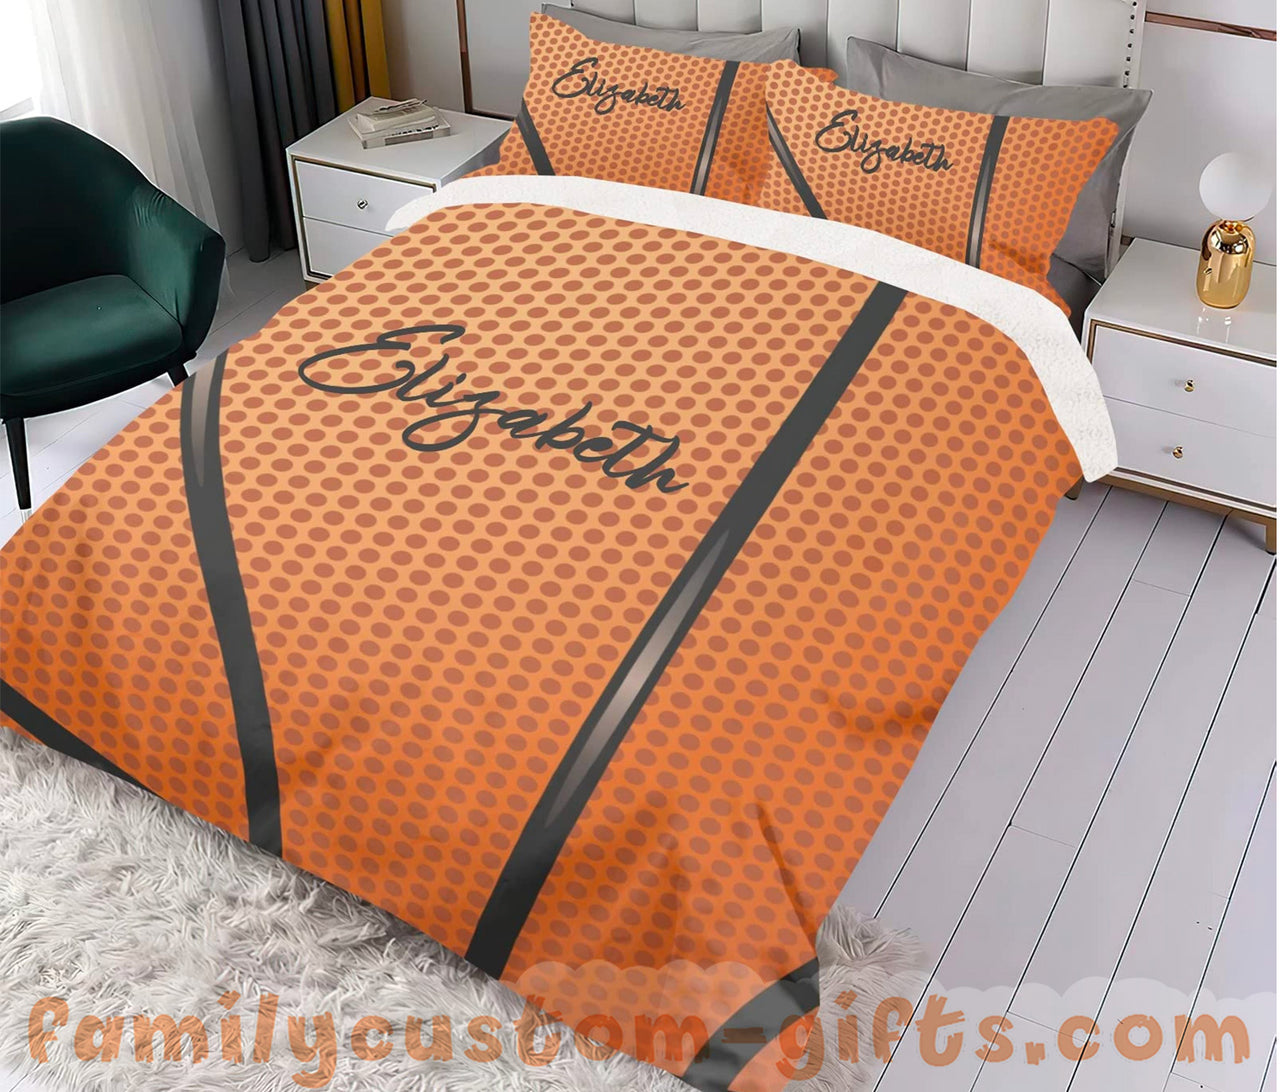 Custom Quilt Sets Sport Basketball Premium Quilt Bedding for Boys Girls Men Women